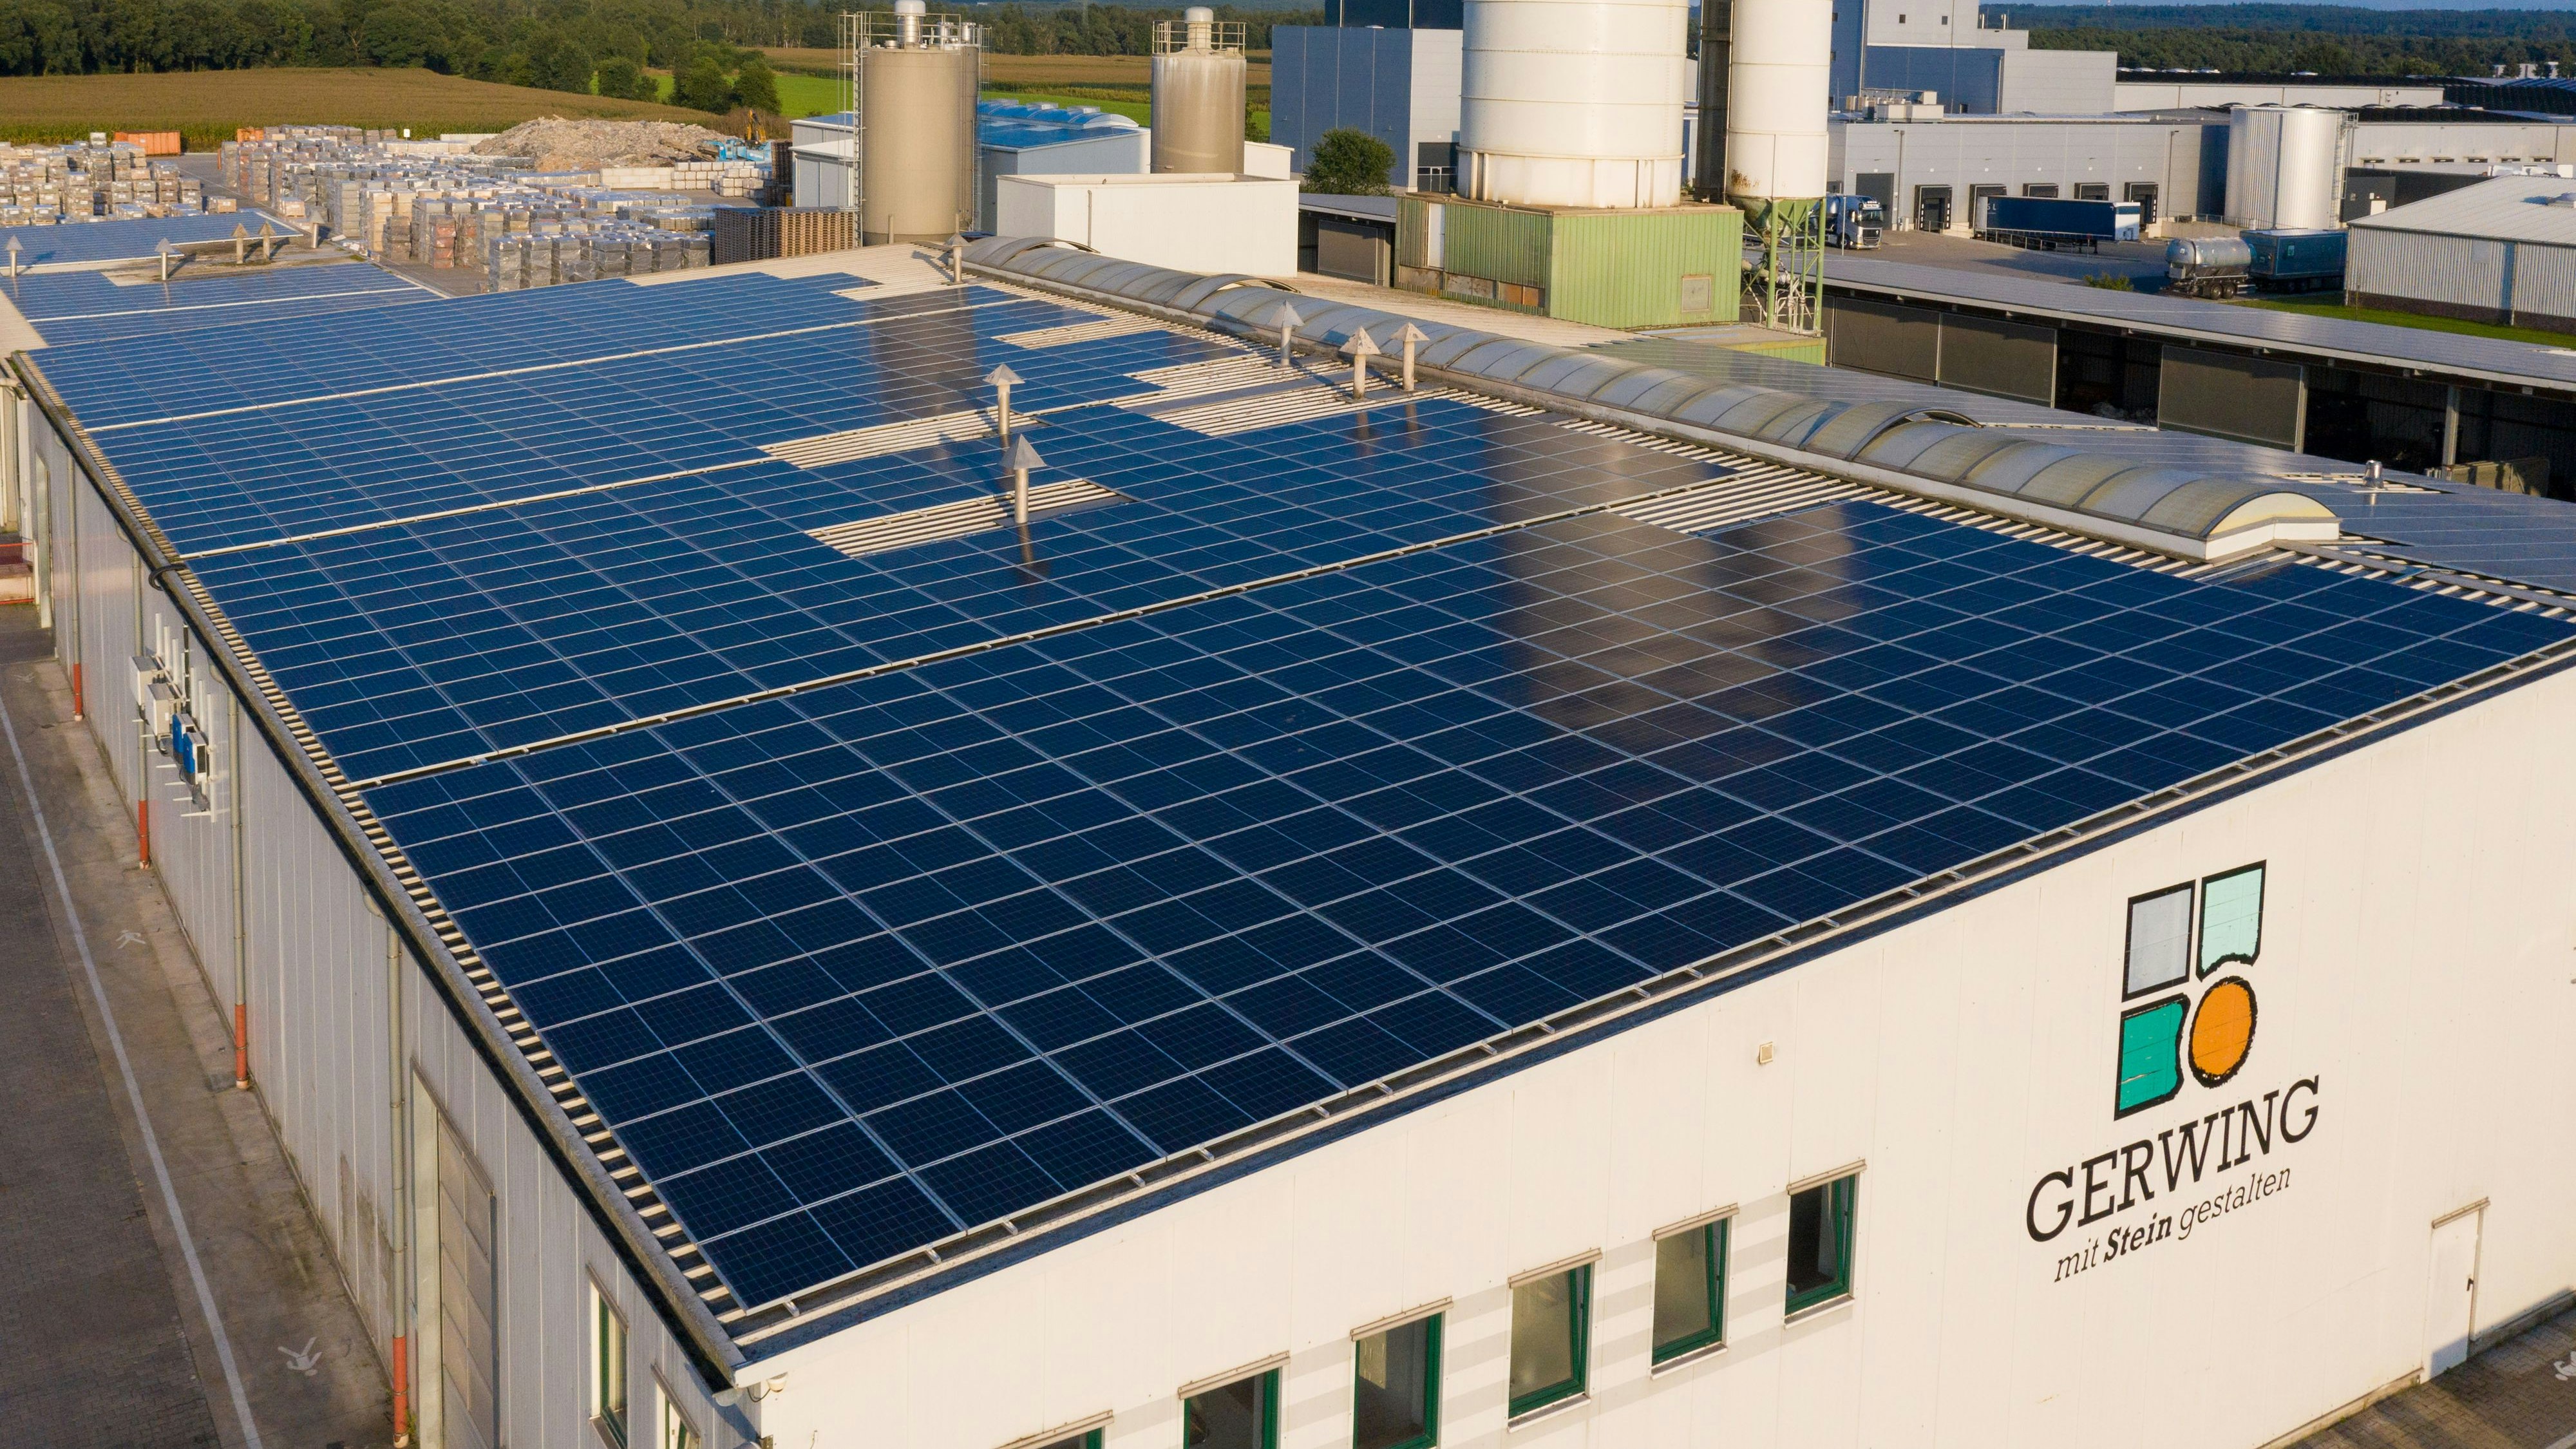 Solaranlage der Firma Gerwing in Holdorf: Sie durfte über ein Jahr lang keinen Strom liefern, weil das komplizierte Zertifizierungsverfahren noch lief. Foto: M. Niehues